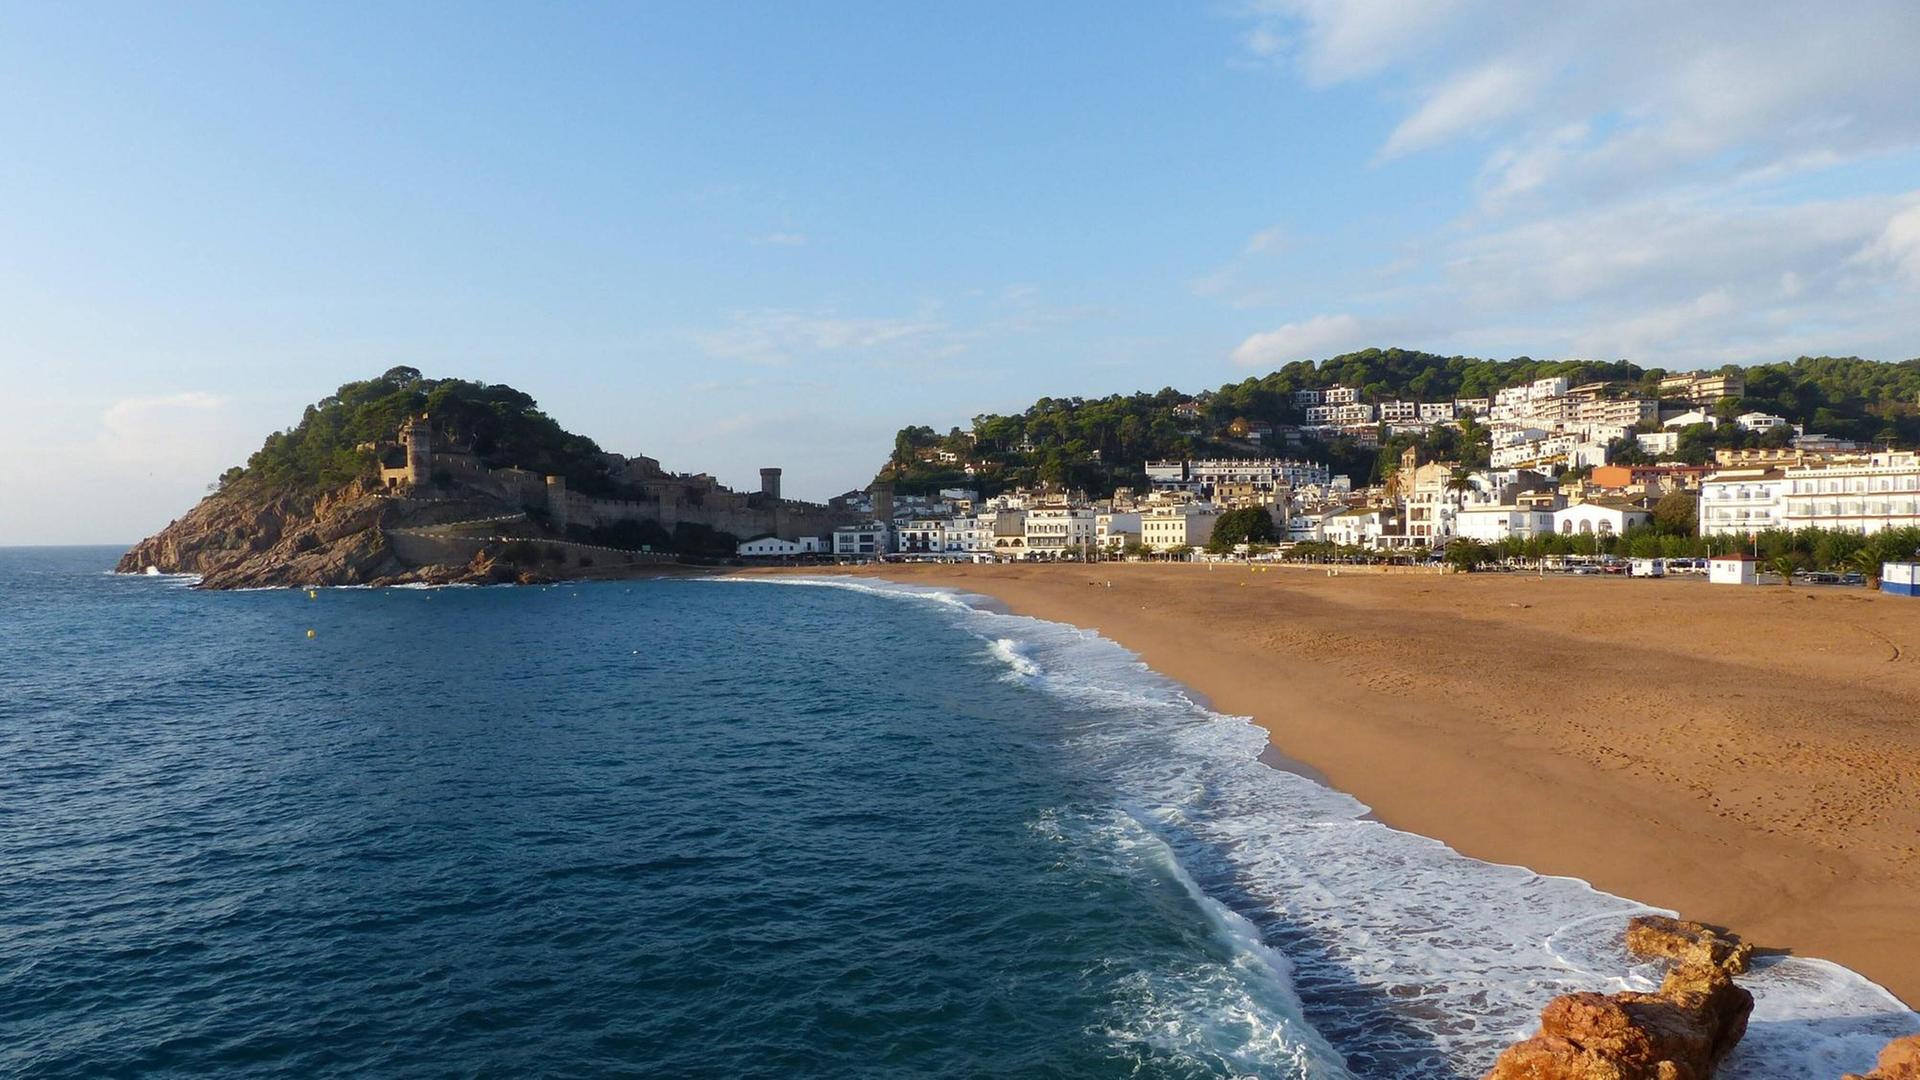 Blick auf Strand, Meer und Felsenküste bei Tossa de Mar an der Costa Brava in Spanien.